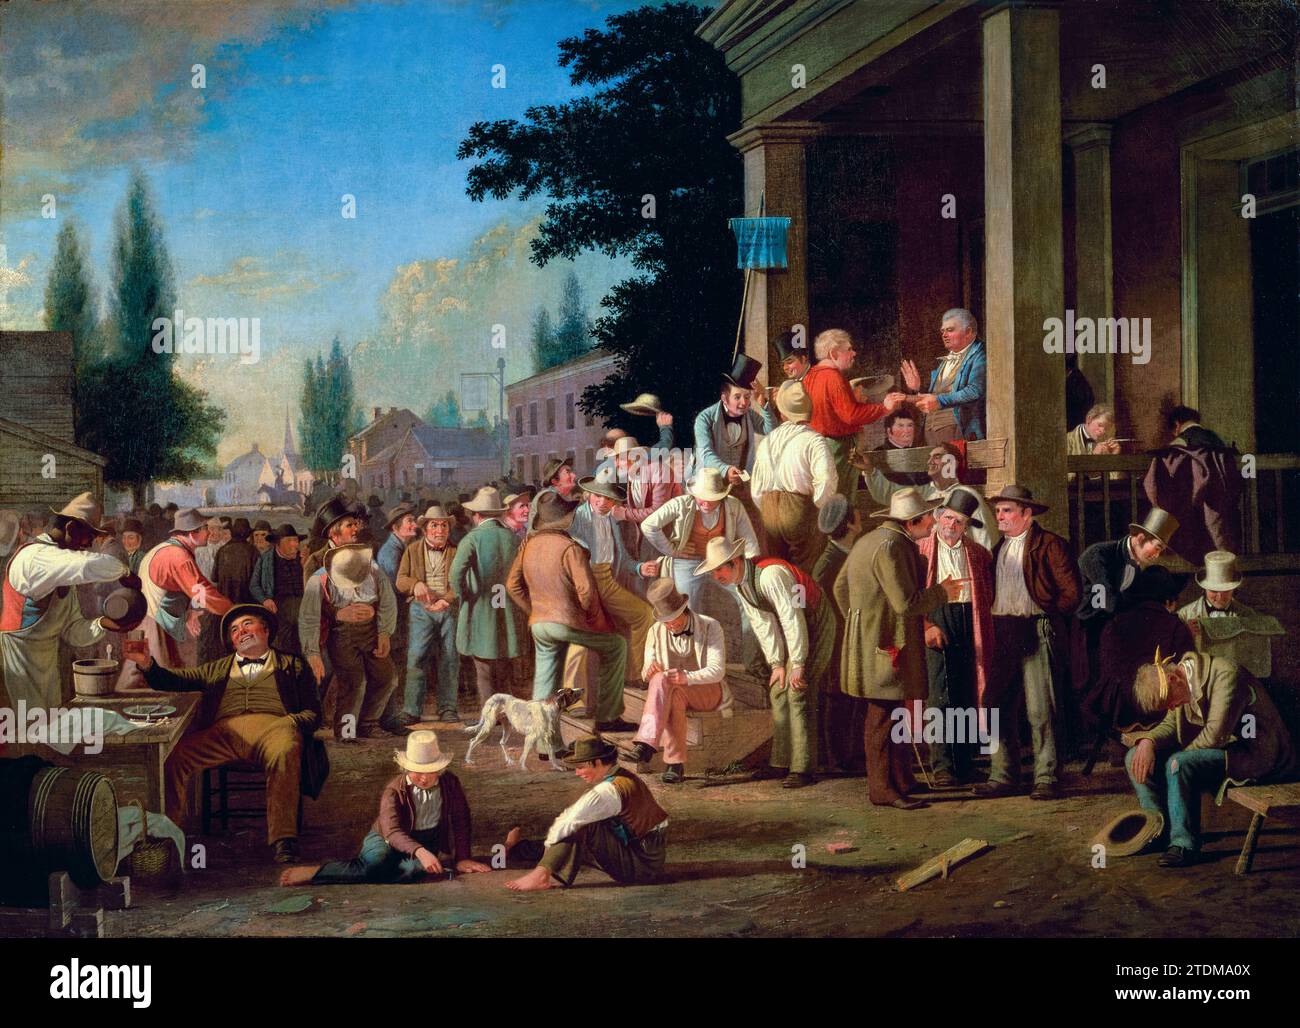 George Caleb Bingham, The County Election, peinture à l'huile sur toile, 1851-1852 Banque D'Images